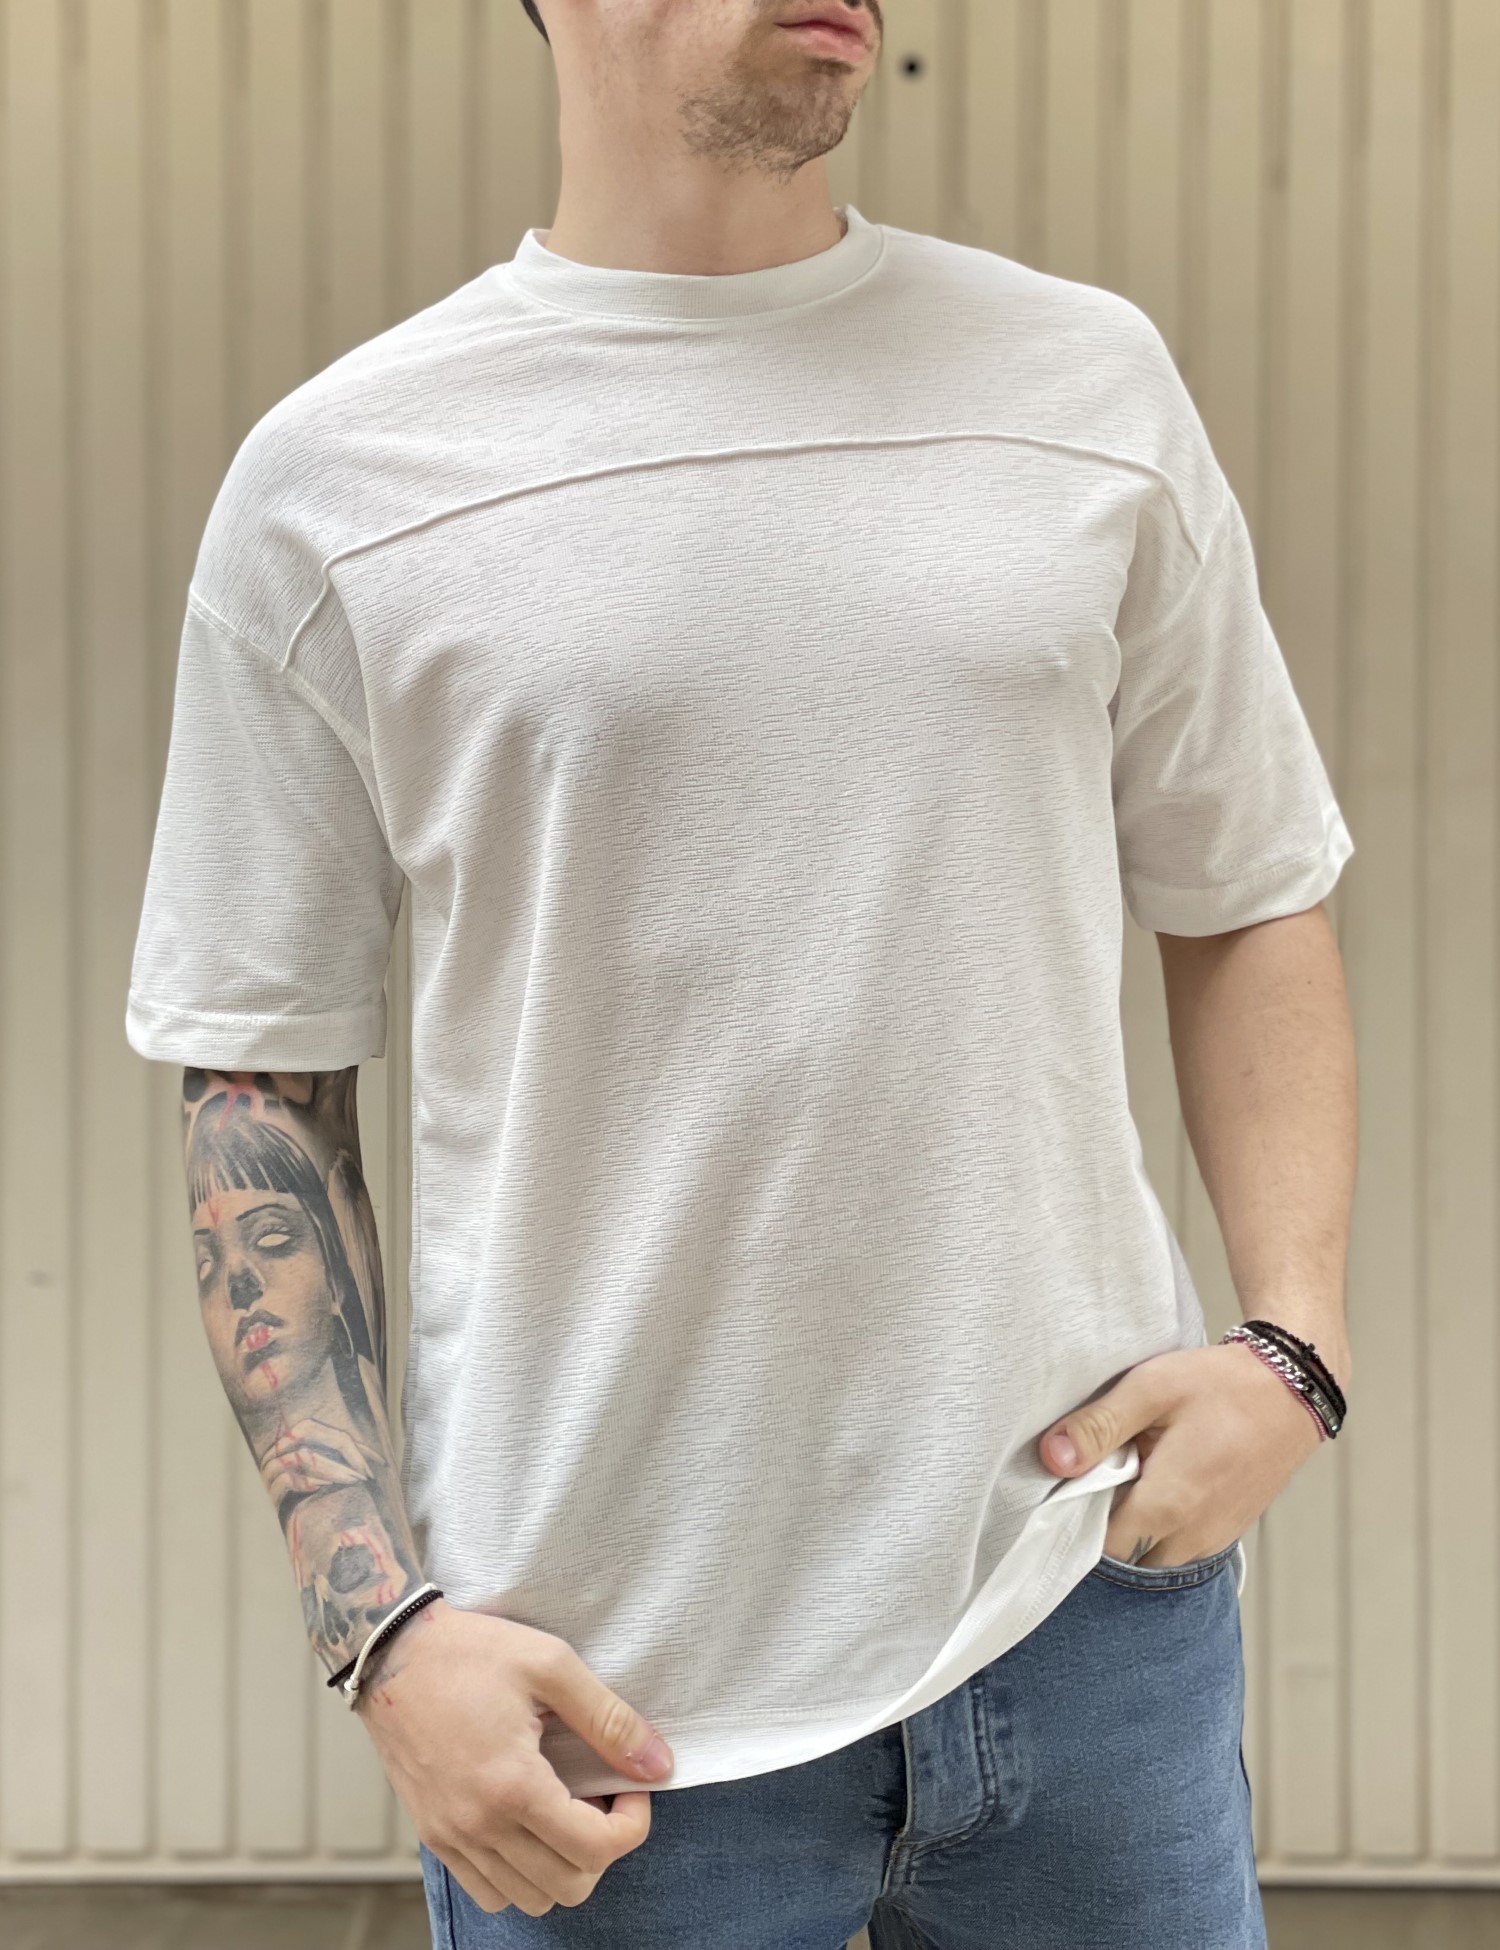 ΑΝΔΡΑΣ > ΑΝΔΡΙΚΑ ΡΟΥΧΑ > ΜΠΛΟΥΖΕΣ > T-Shirt Ανδρική λευκή κοντομάνικη μπλούζα Oversized TST2030W